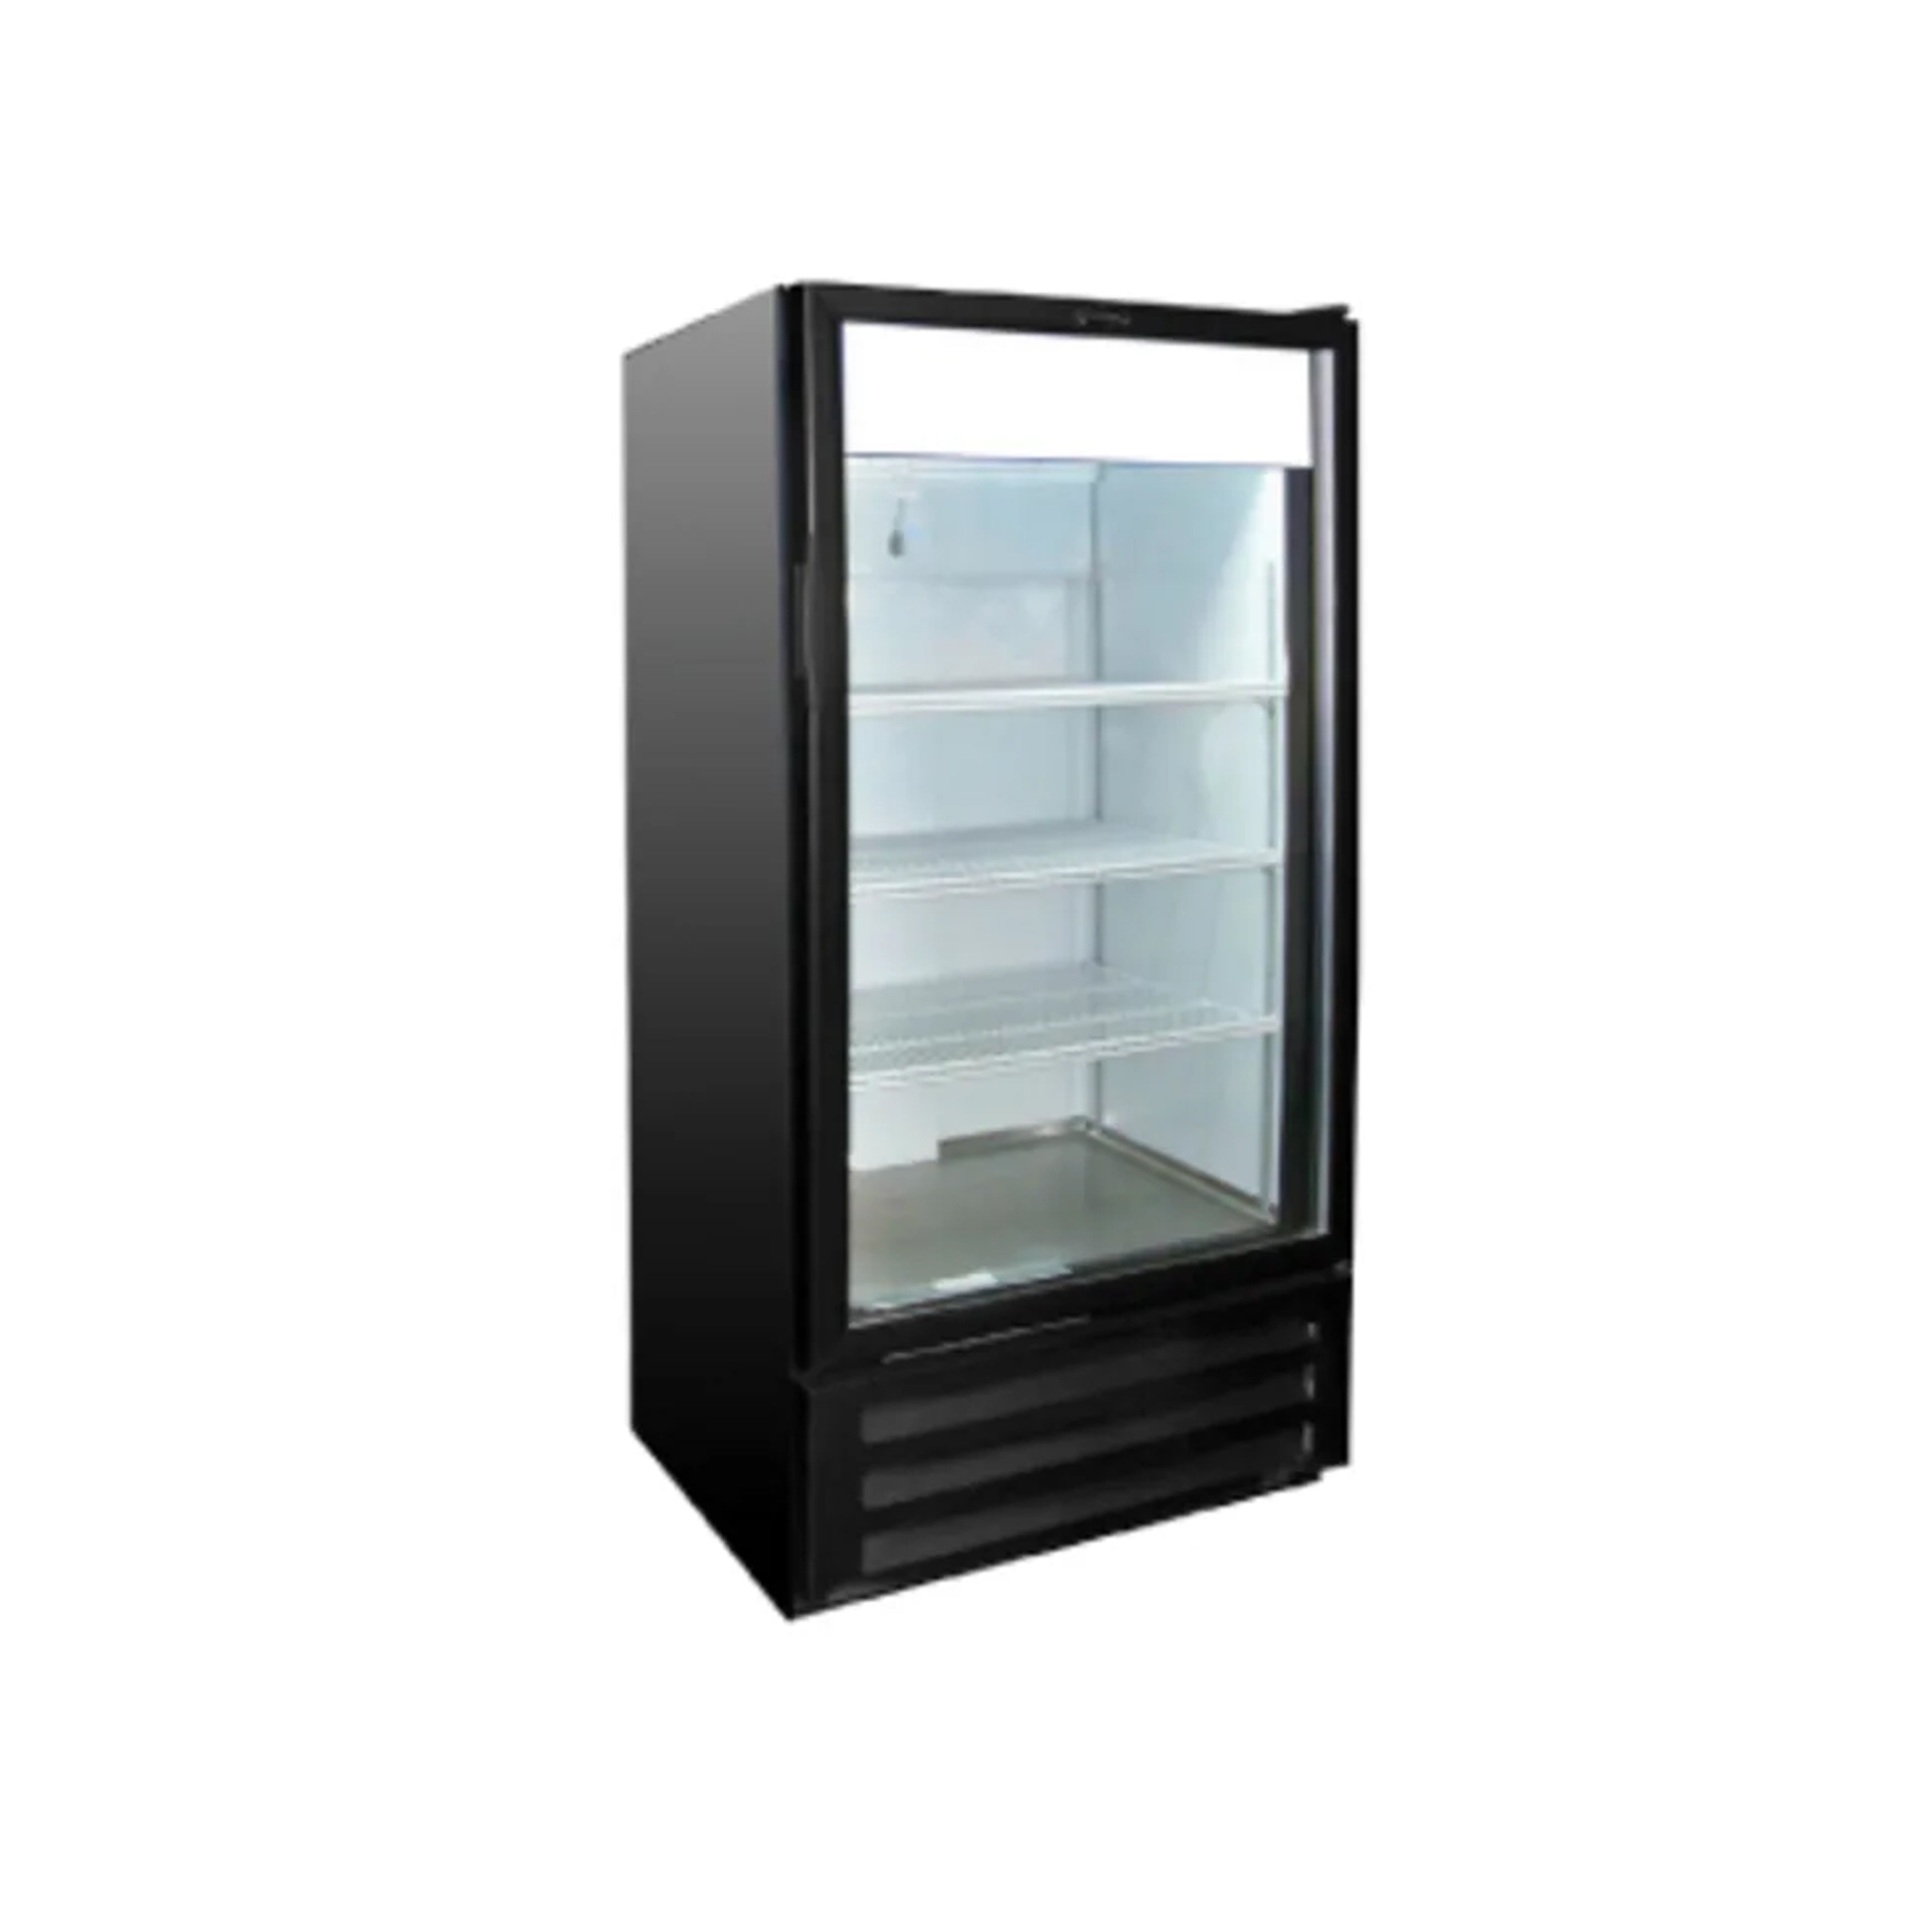 Excellence Industries - VR-26HC, 30" Commercial 1 Glass Door Merchandiser Refrigerator 26 cu.ft.